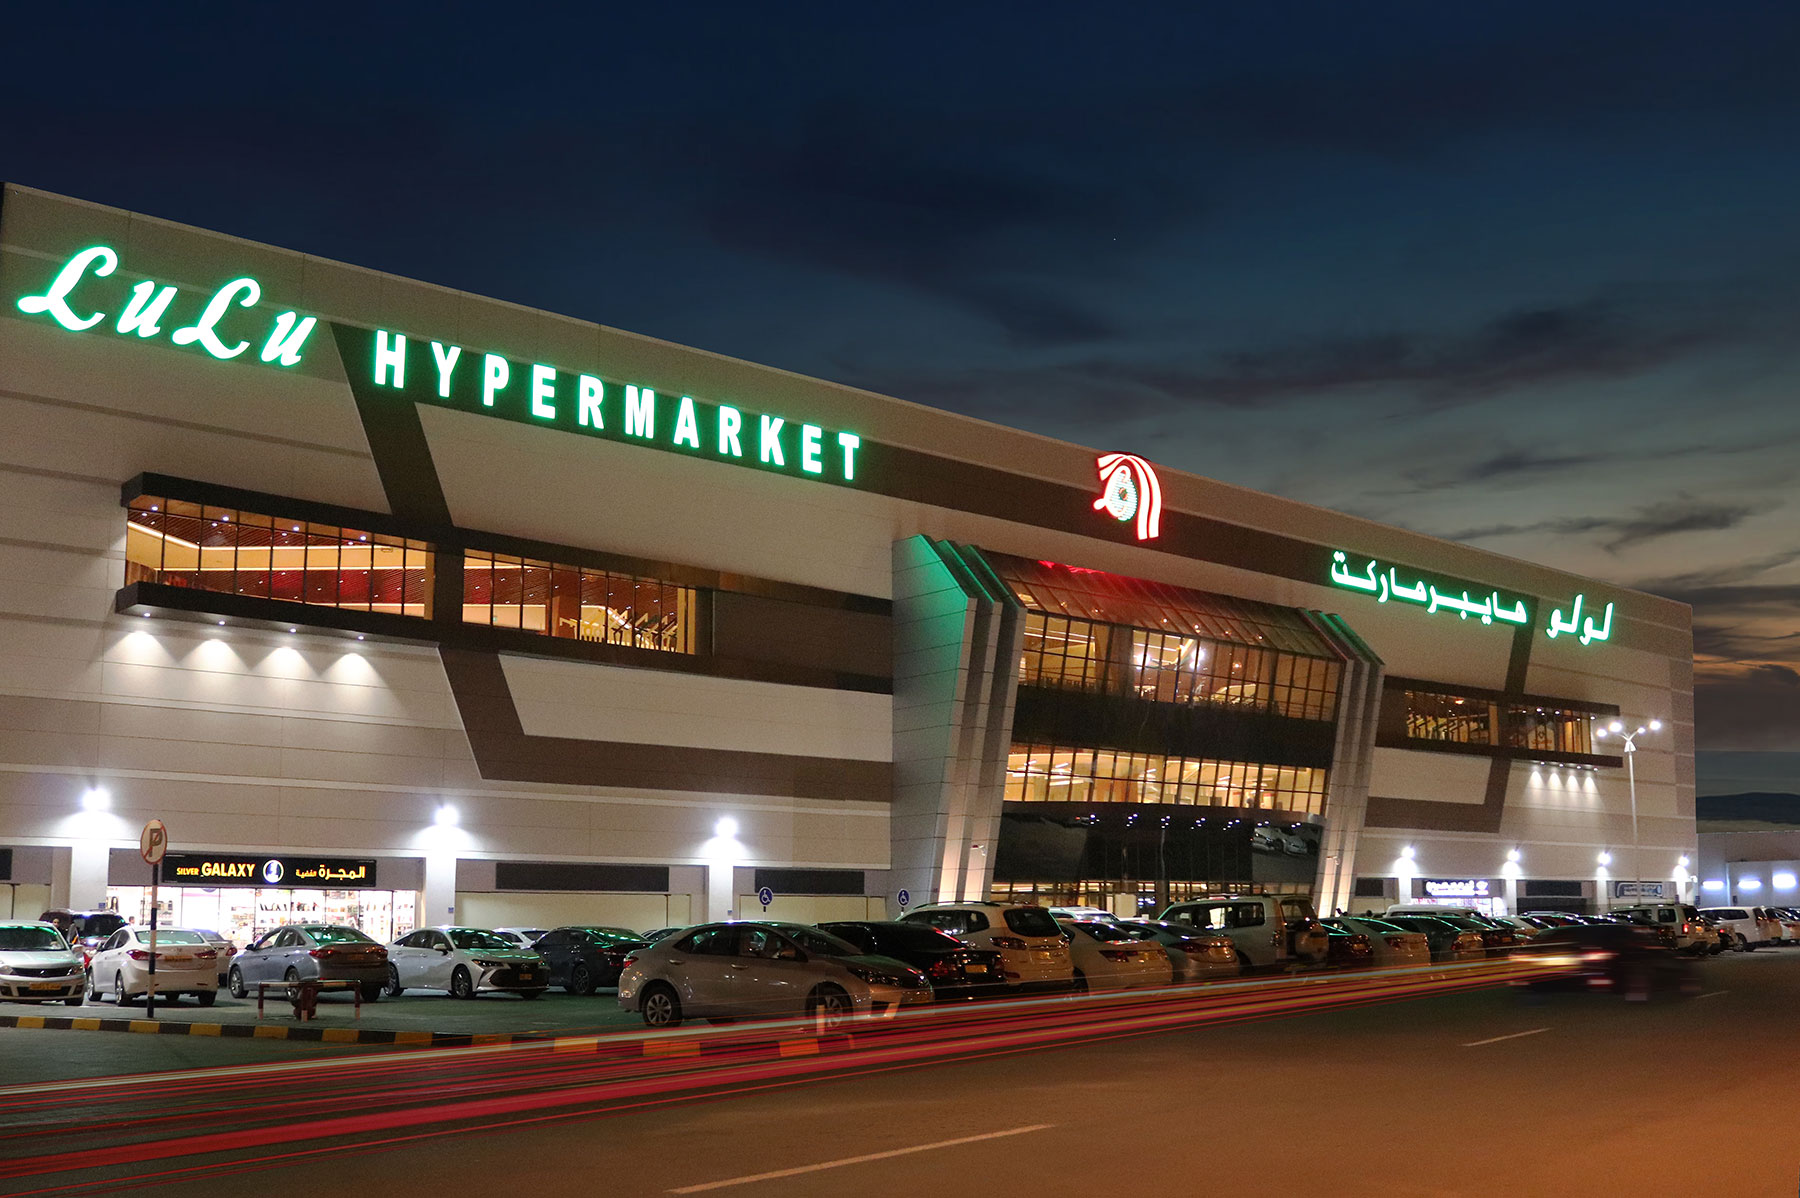 Lulu hypermarket